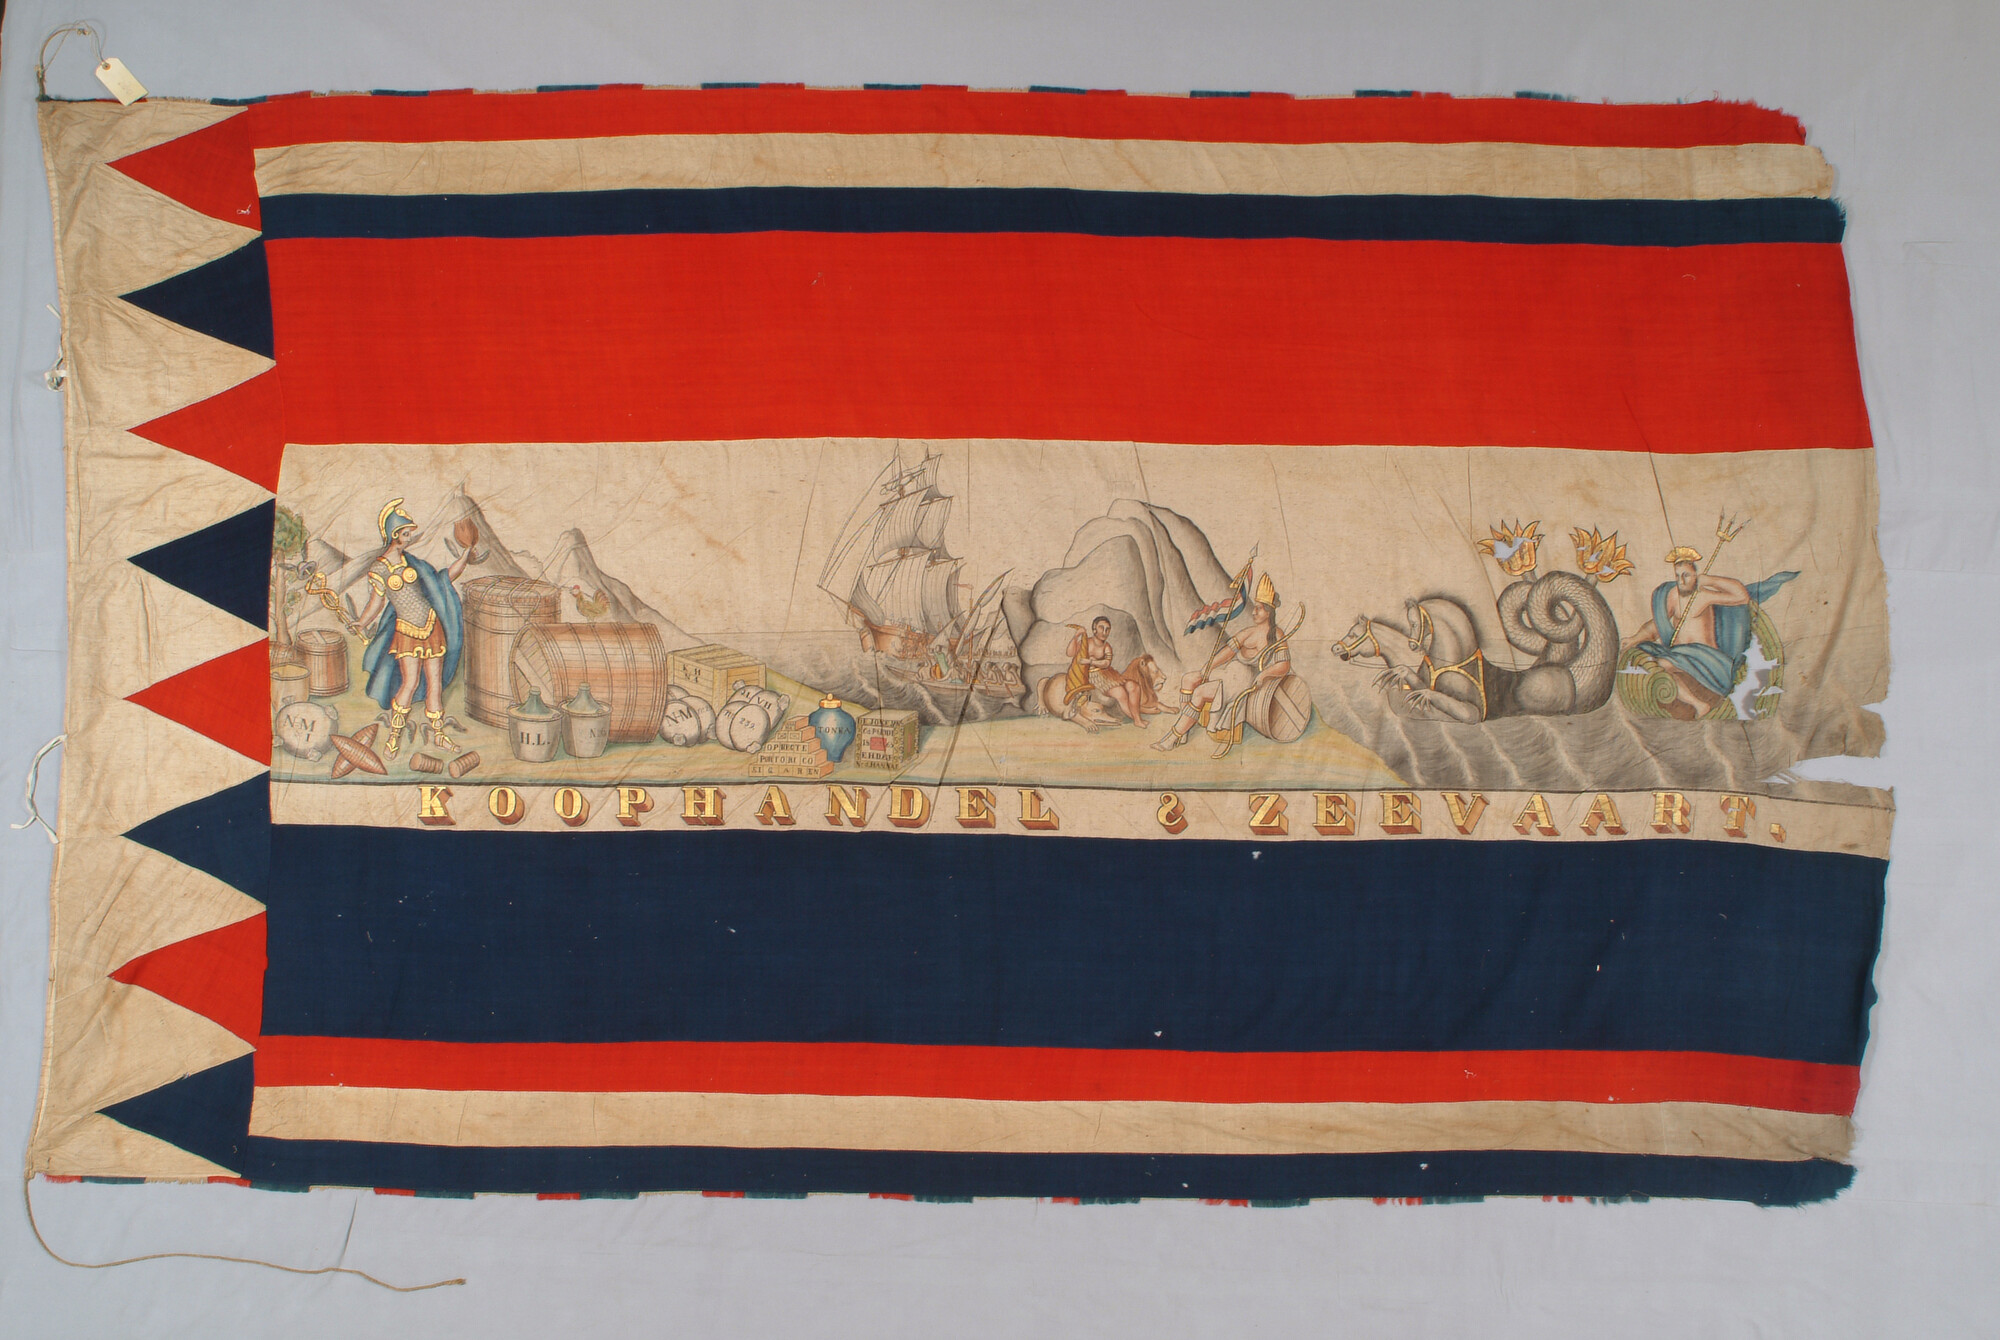 S.0590; feestvlag met zinnebeeldige voorstelling van koophandel en zeevaart; vlag